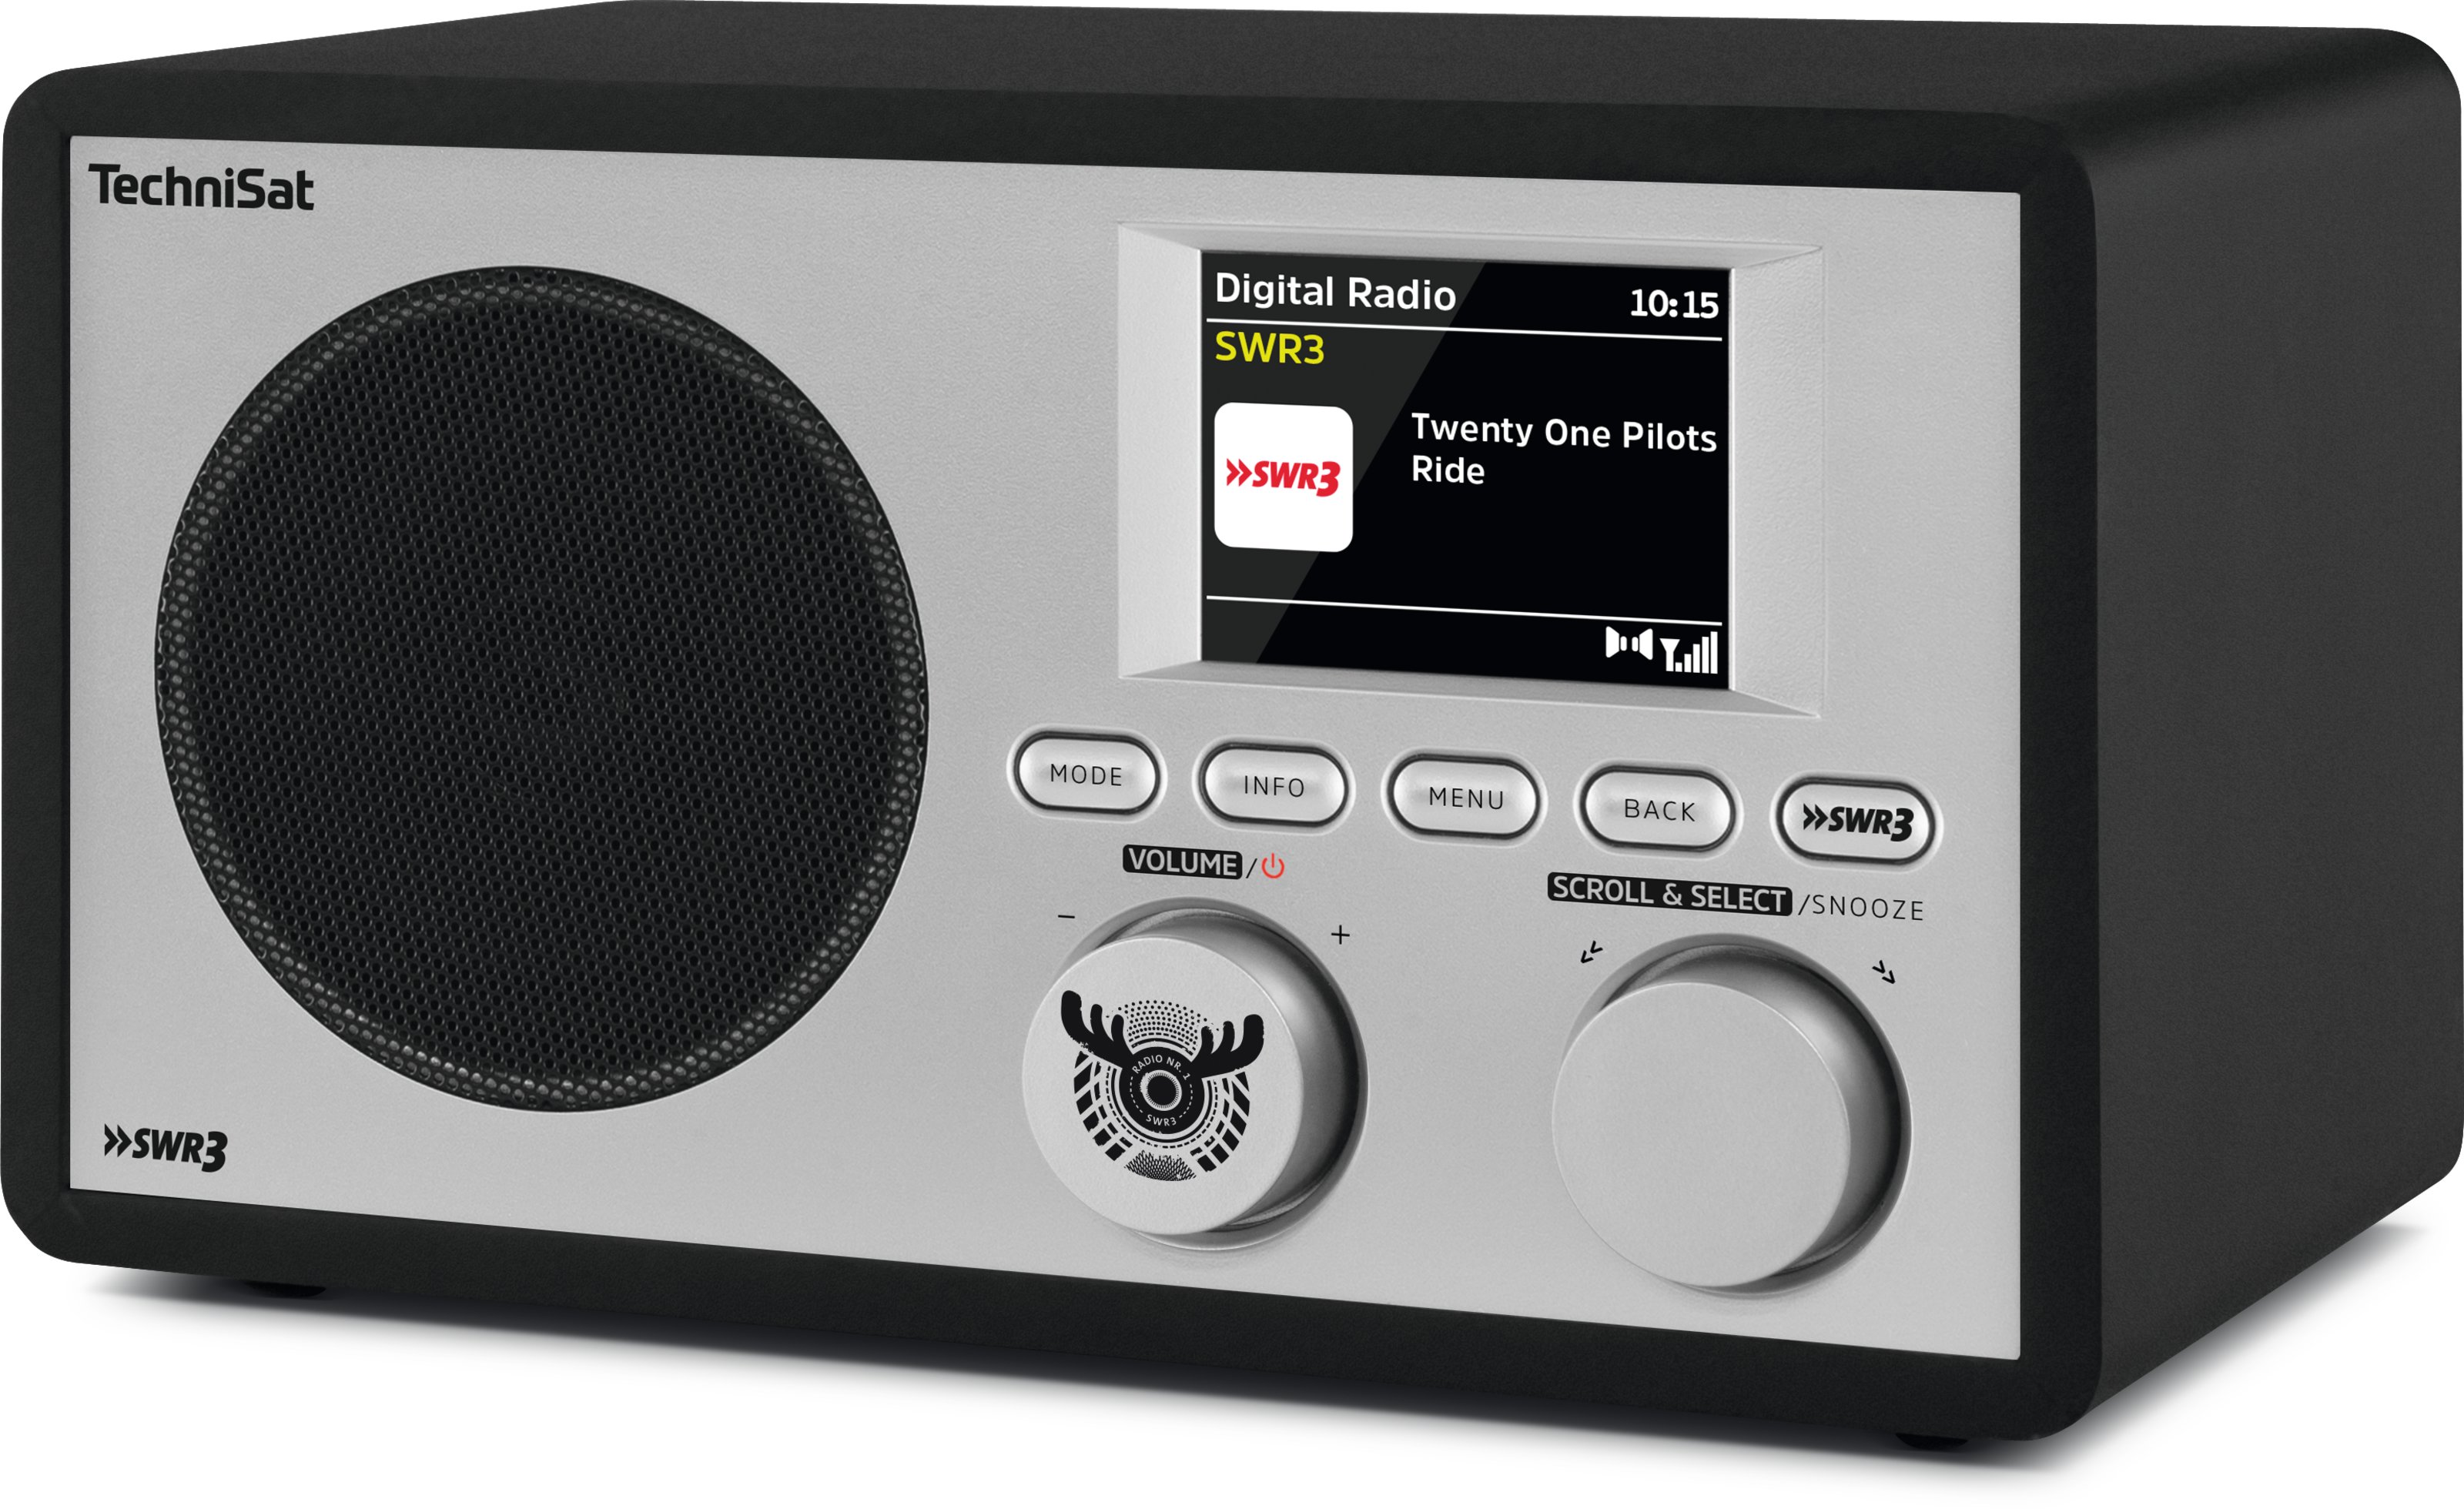 TechniSat DIGITRADIO 303 SWR3 Edition für 78,95 € kaufen | Digital1A | Radios